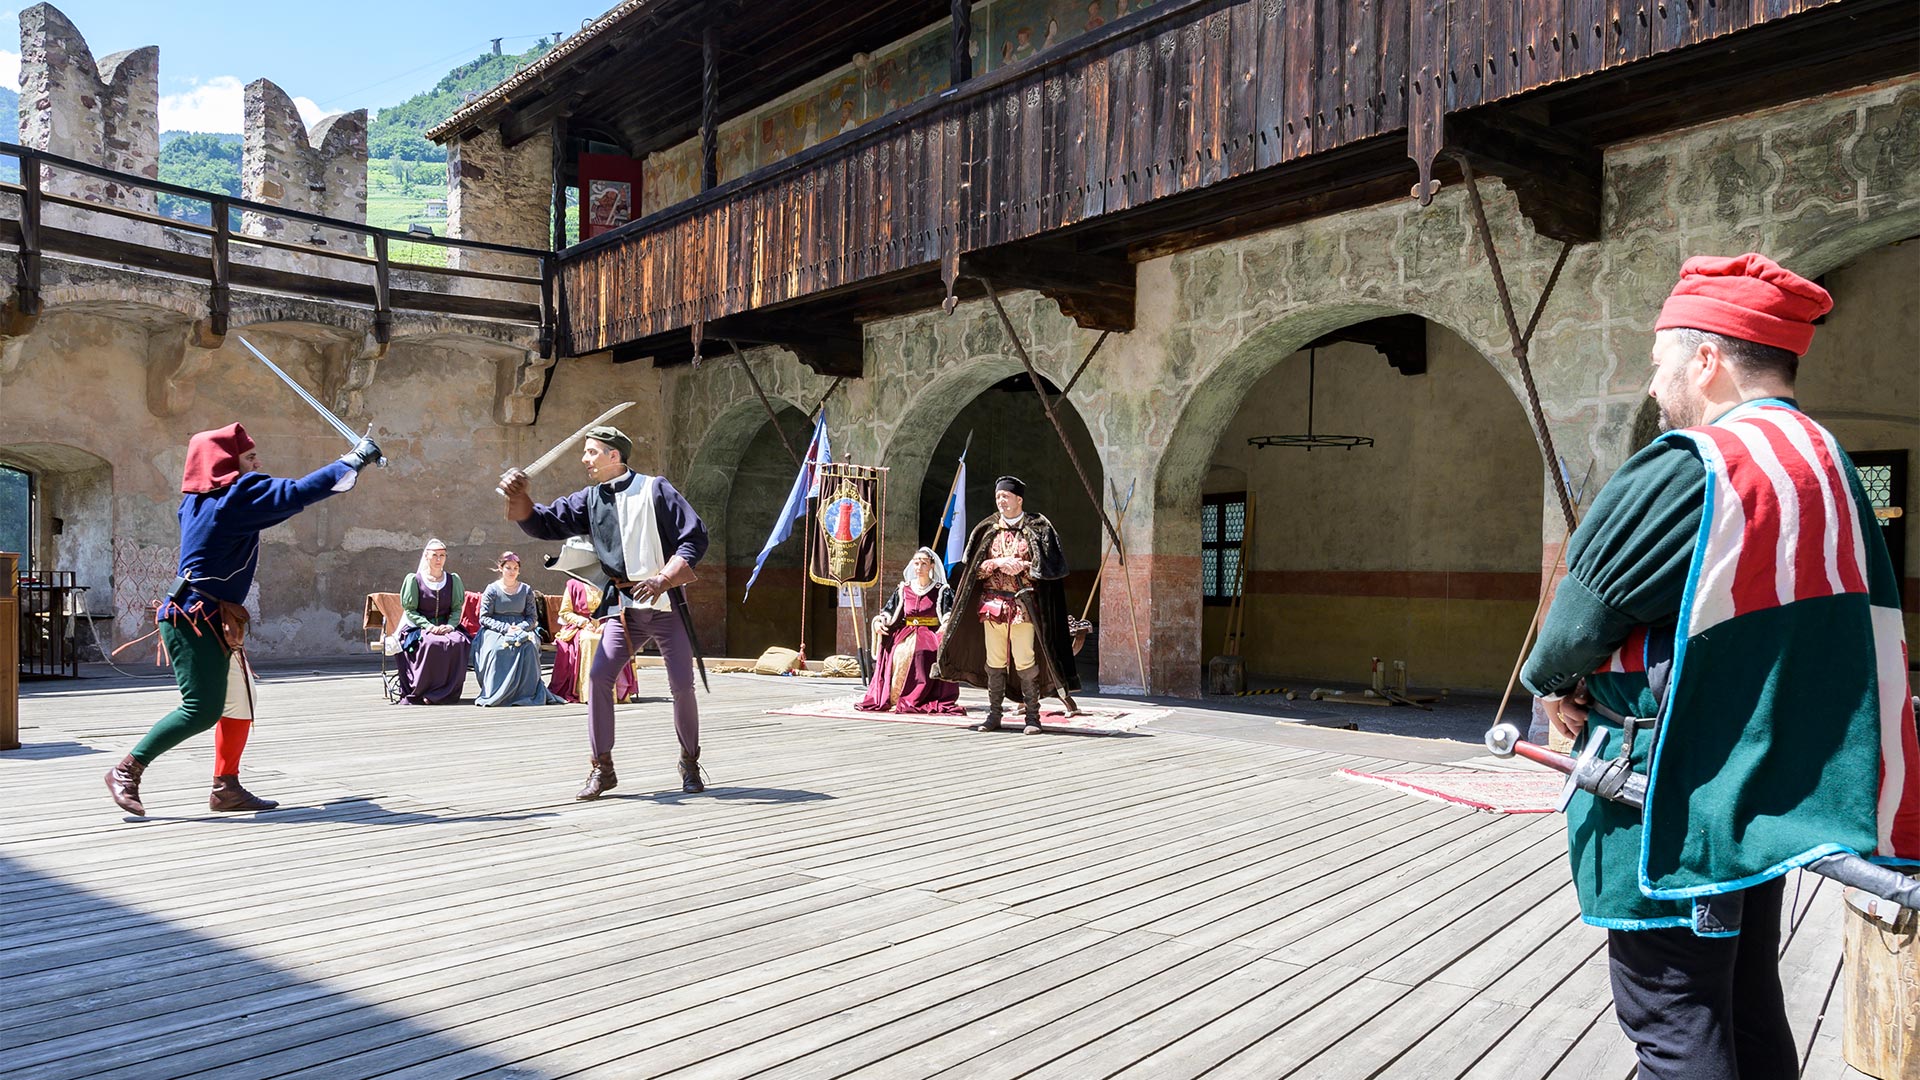 In un evento culturale all'aperto, nel quale due attori vestiti con dei costumi fedeli alla tradizione recitano un duello, i visitatori possono conoscere meglio la storia e la cultura di Bolzano. 